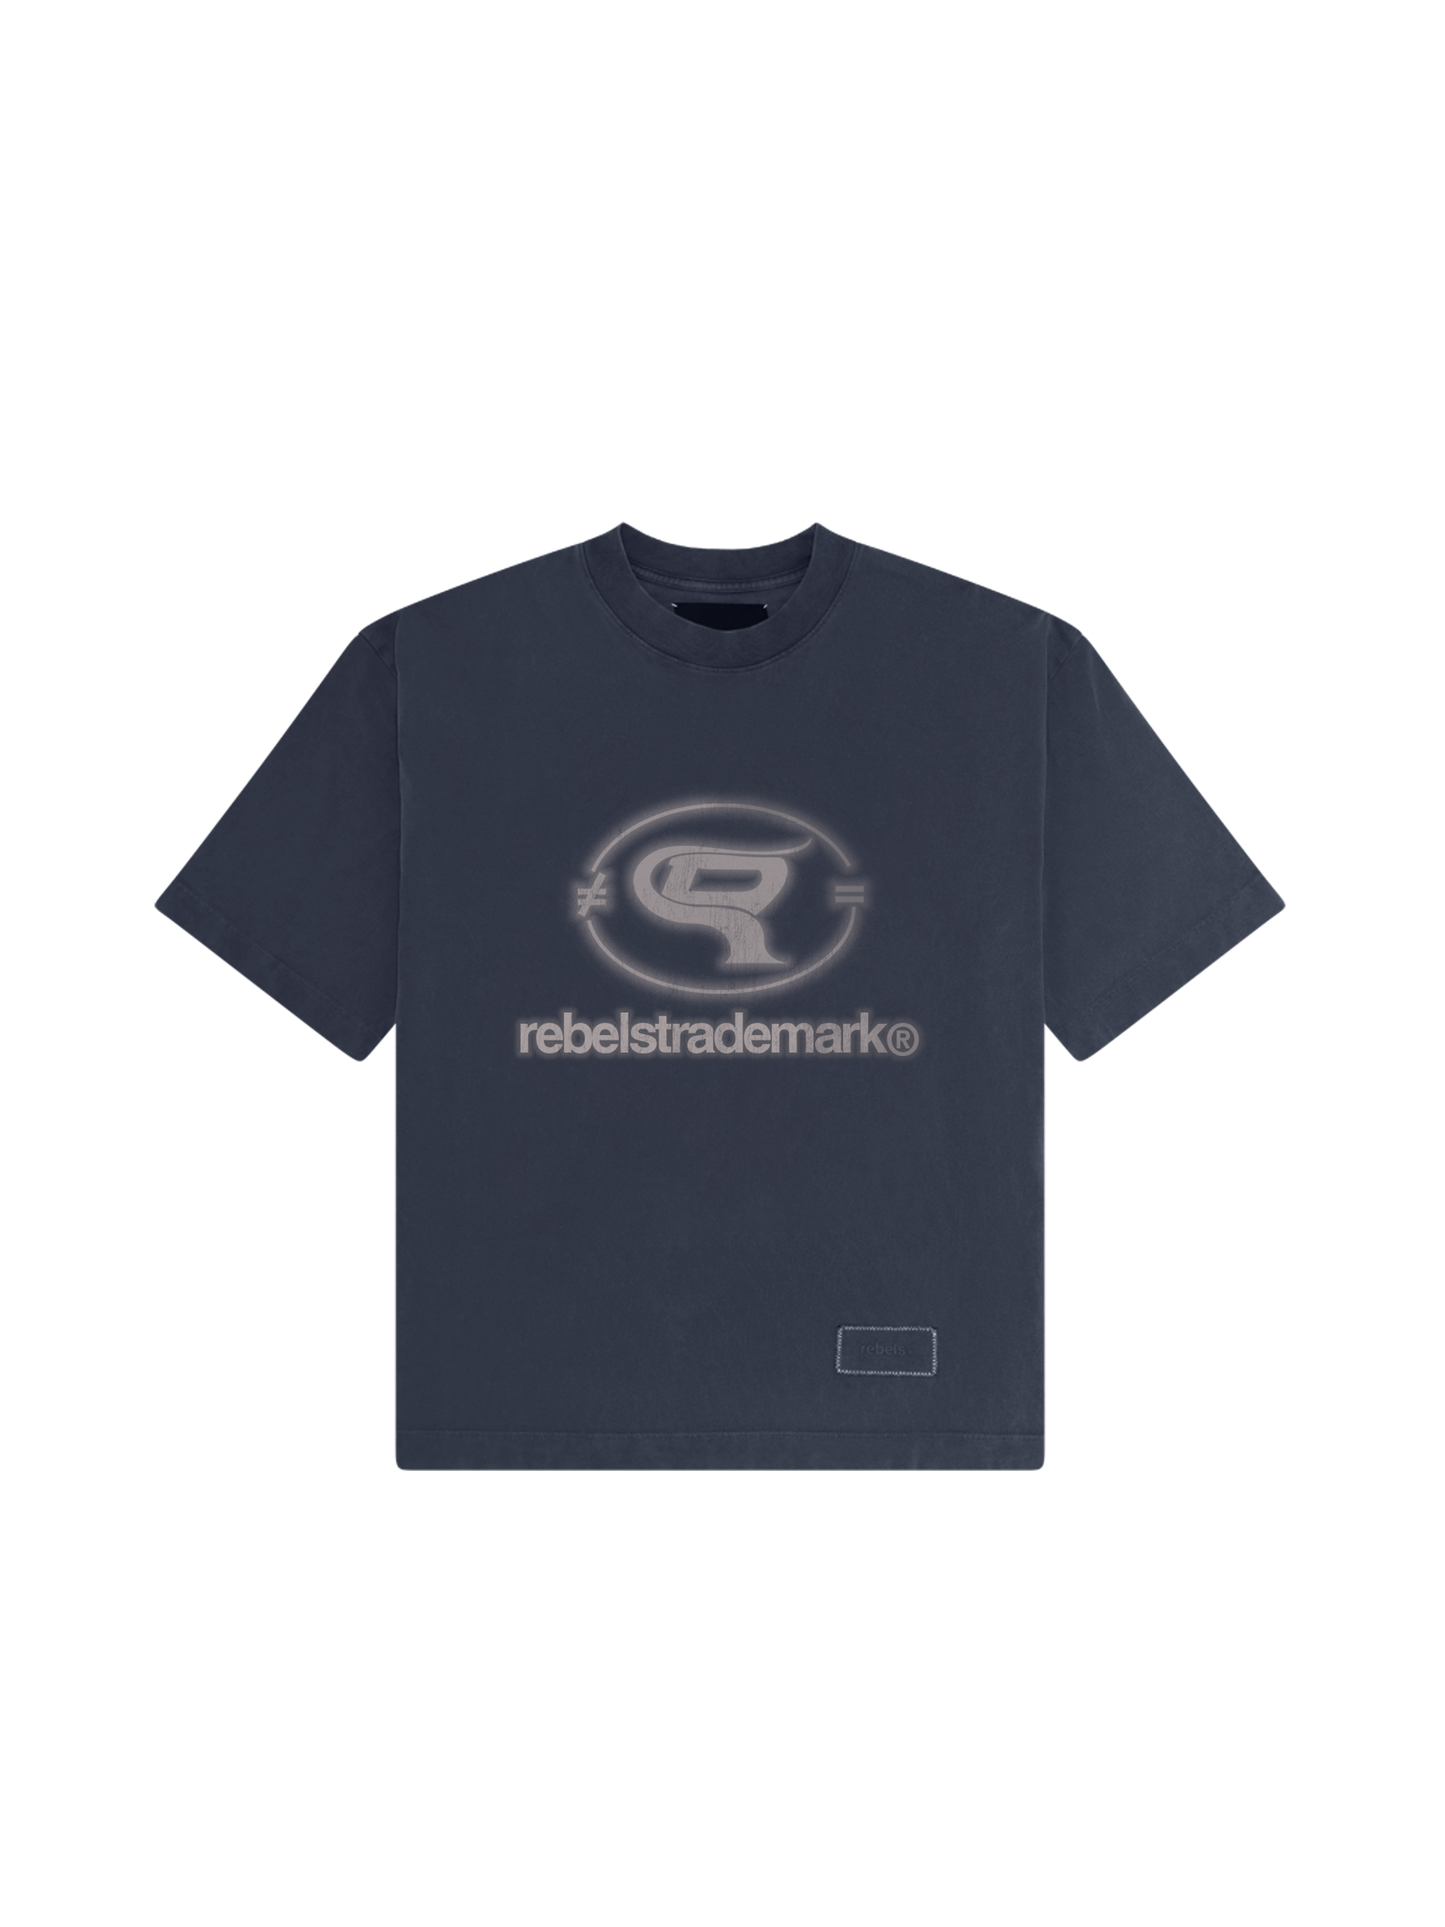 logo t-shirt - navy blue